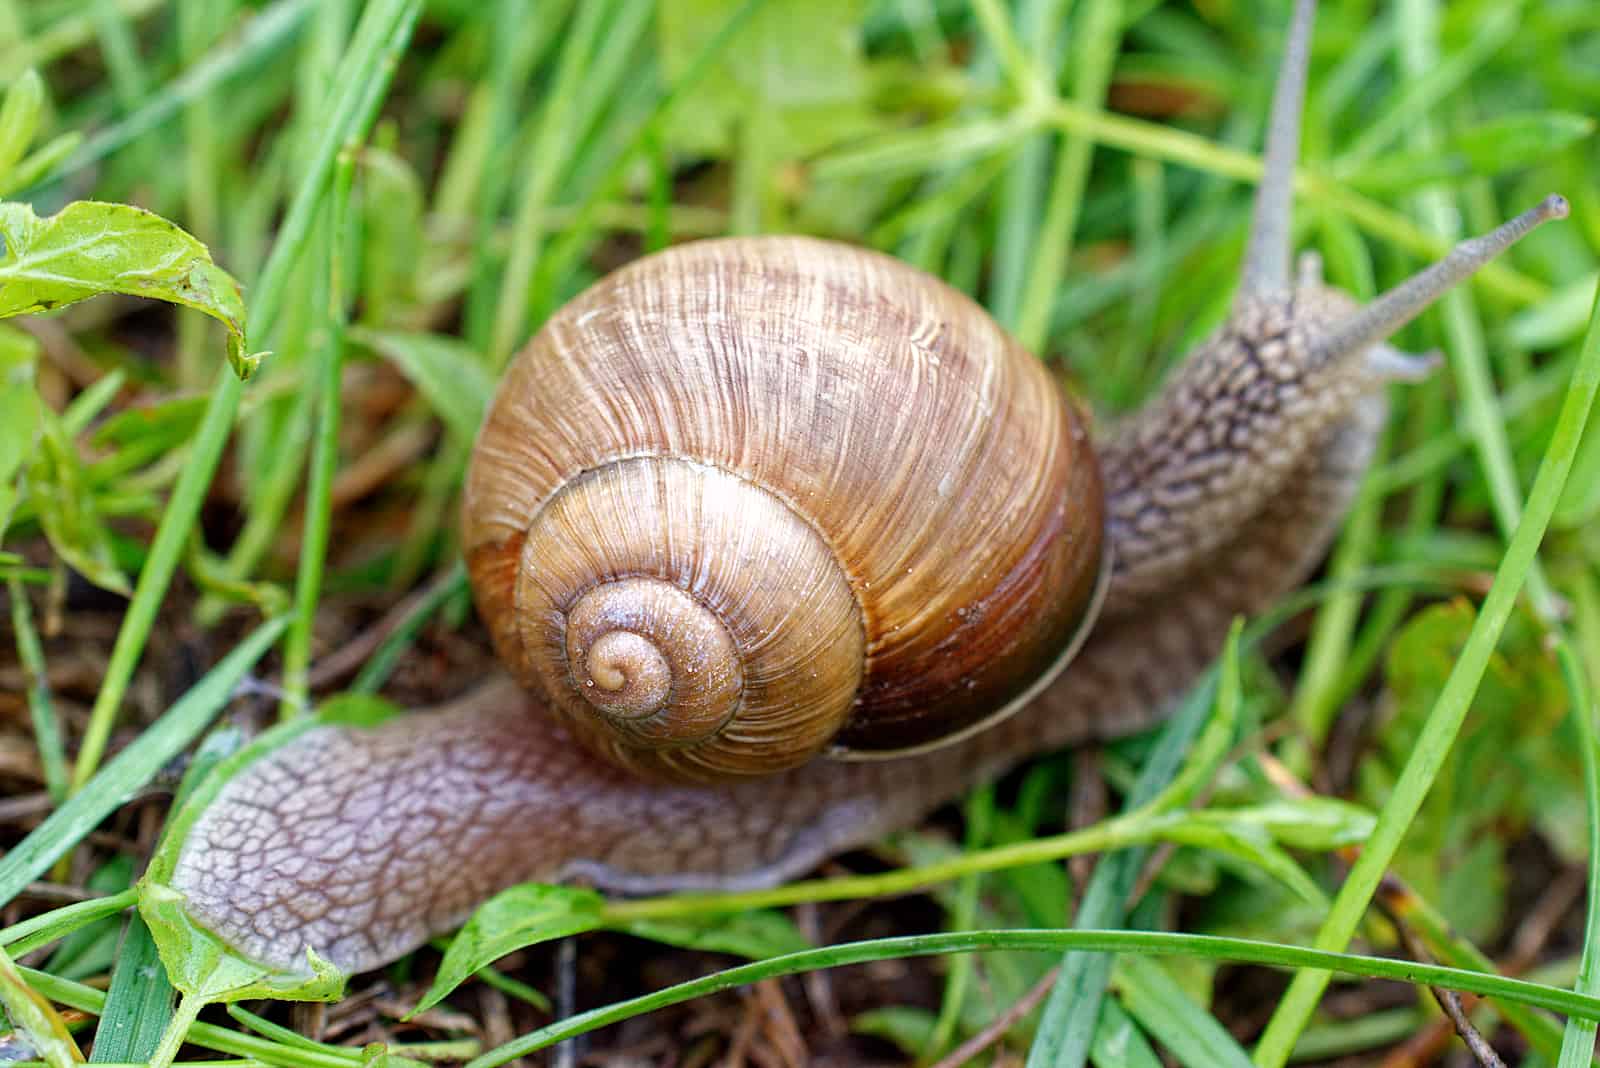 shell of a grape snail among the grass